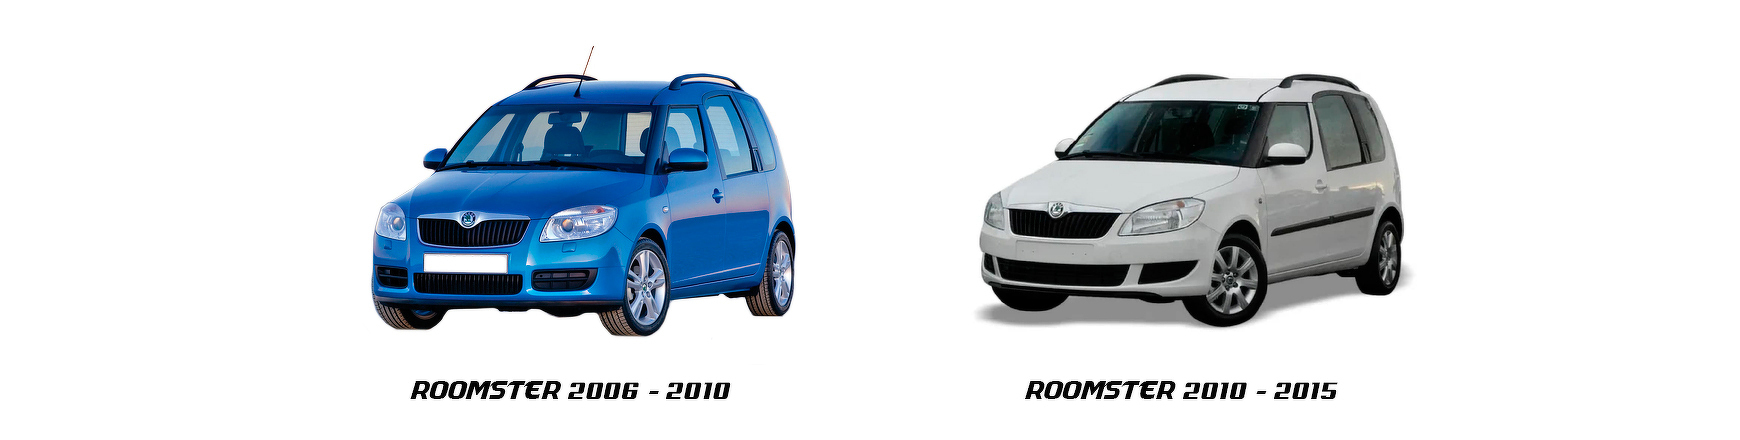 Recambios de automóvil Skoda Roomster, modelo 2007, 2008, 2009 y 2010